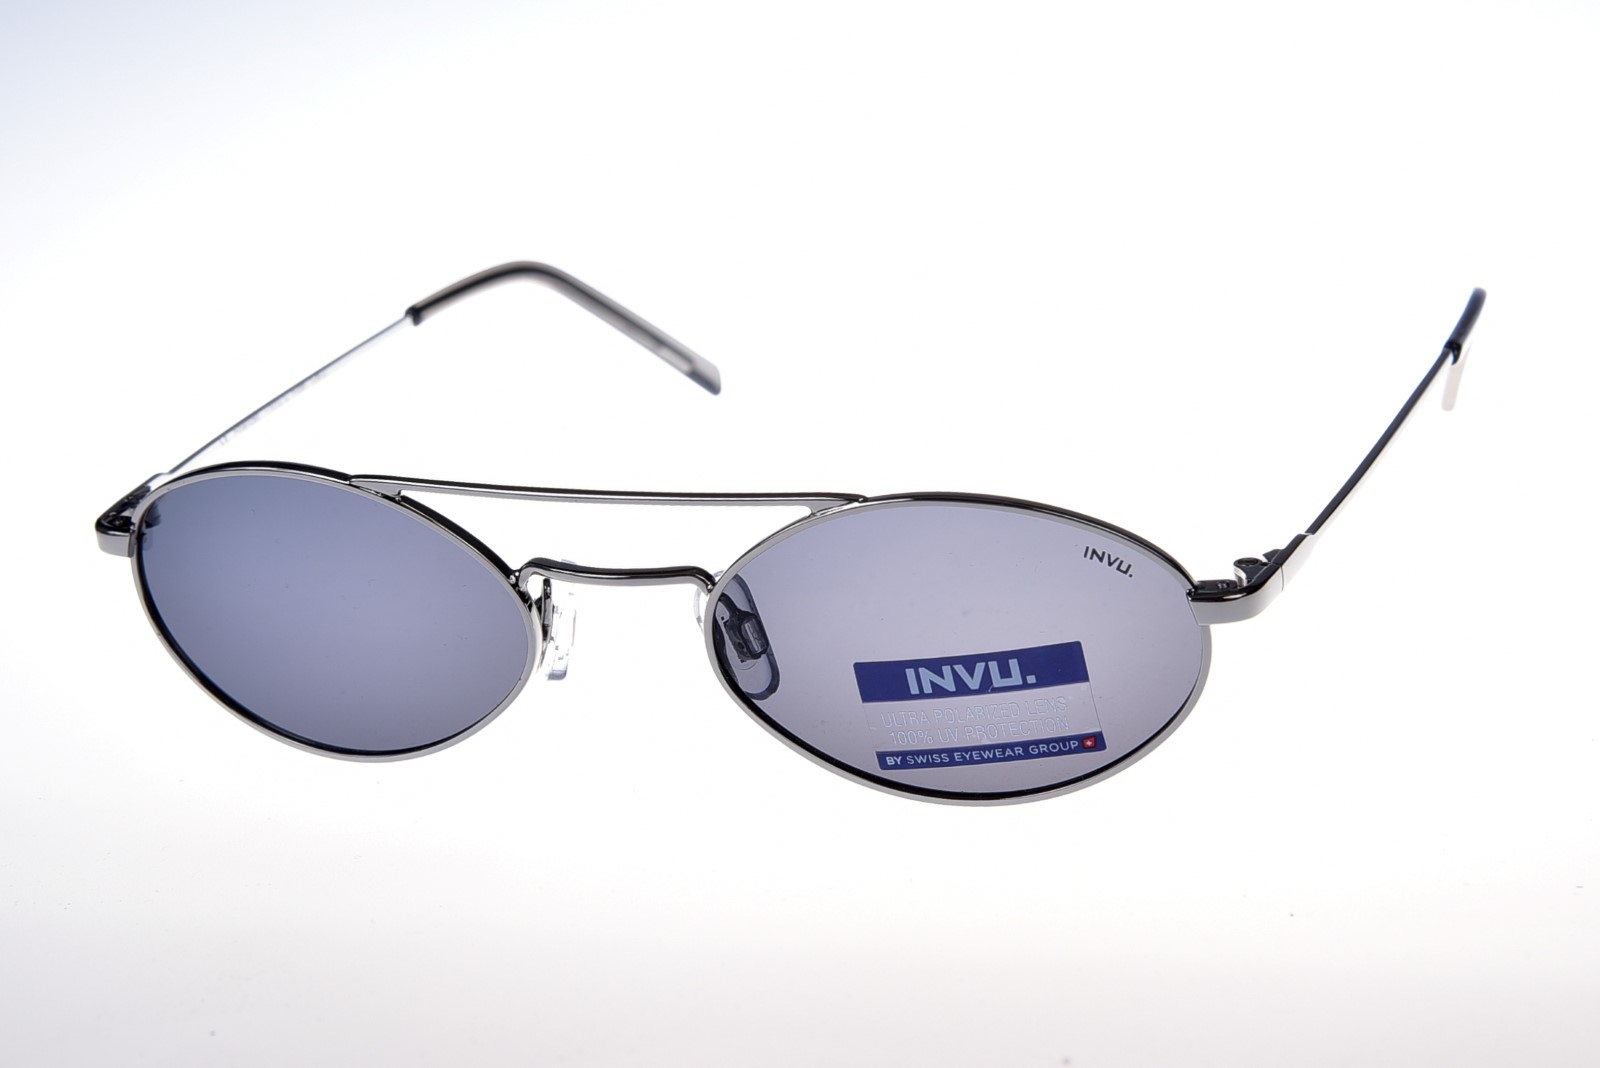 INVU. Trend T1012A - Unisex slnečné okuliare